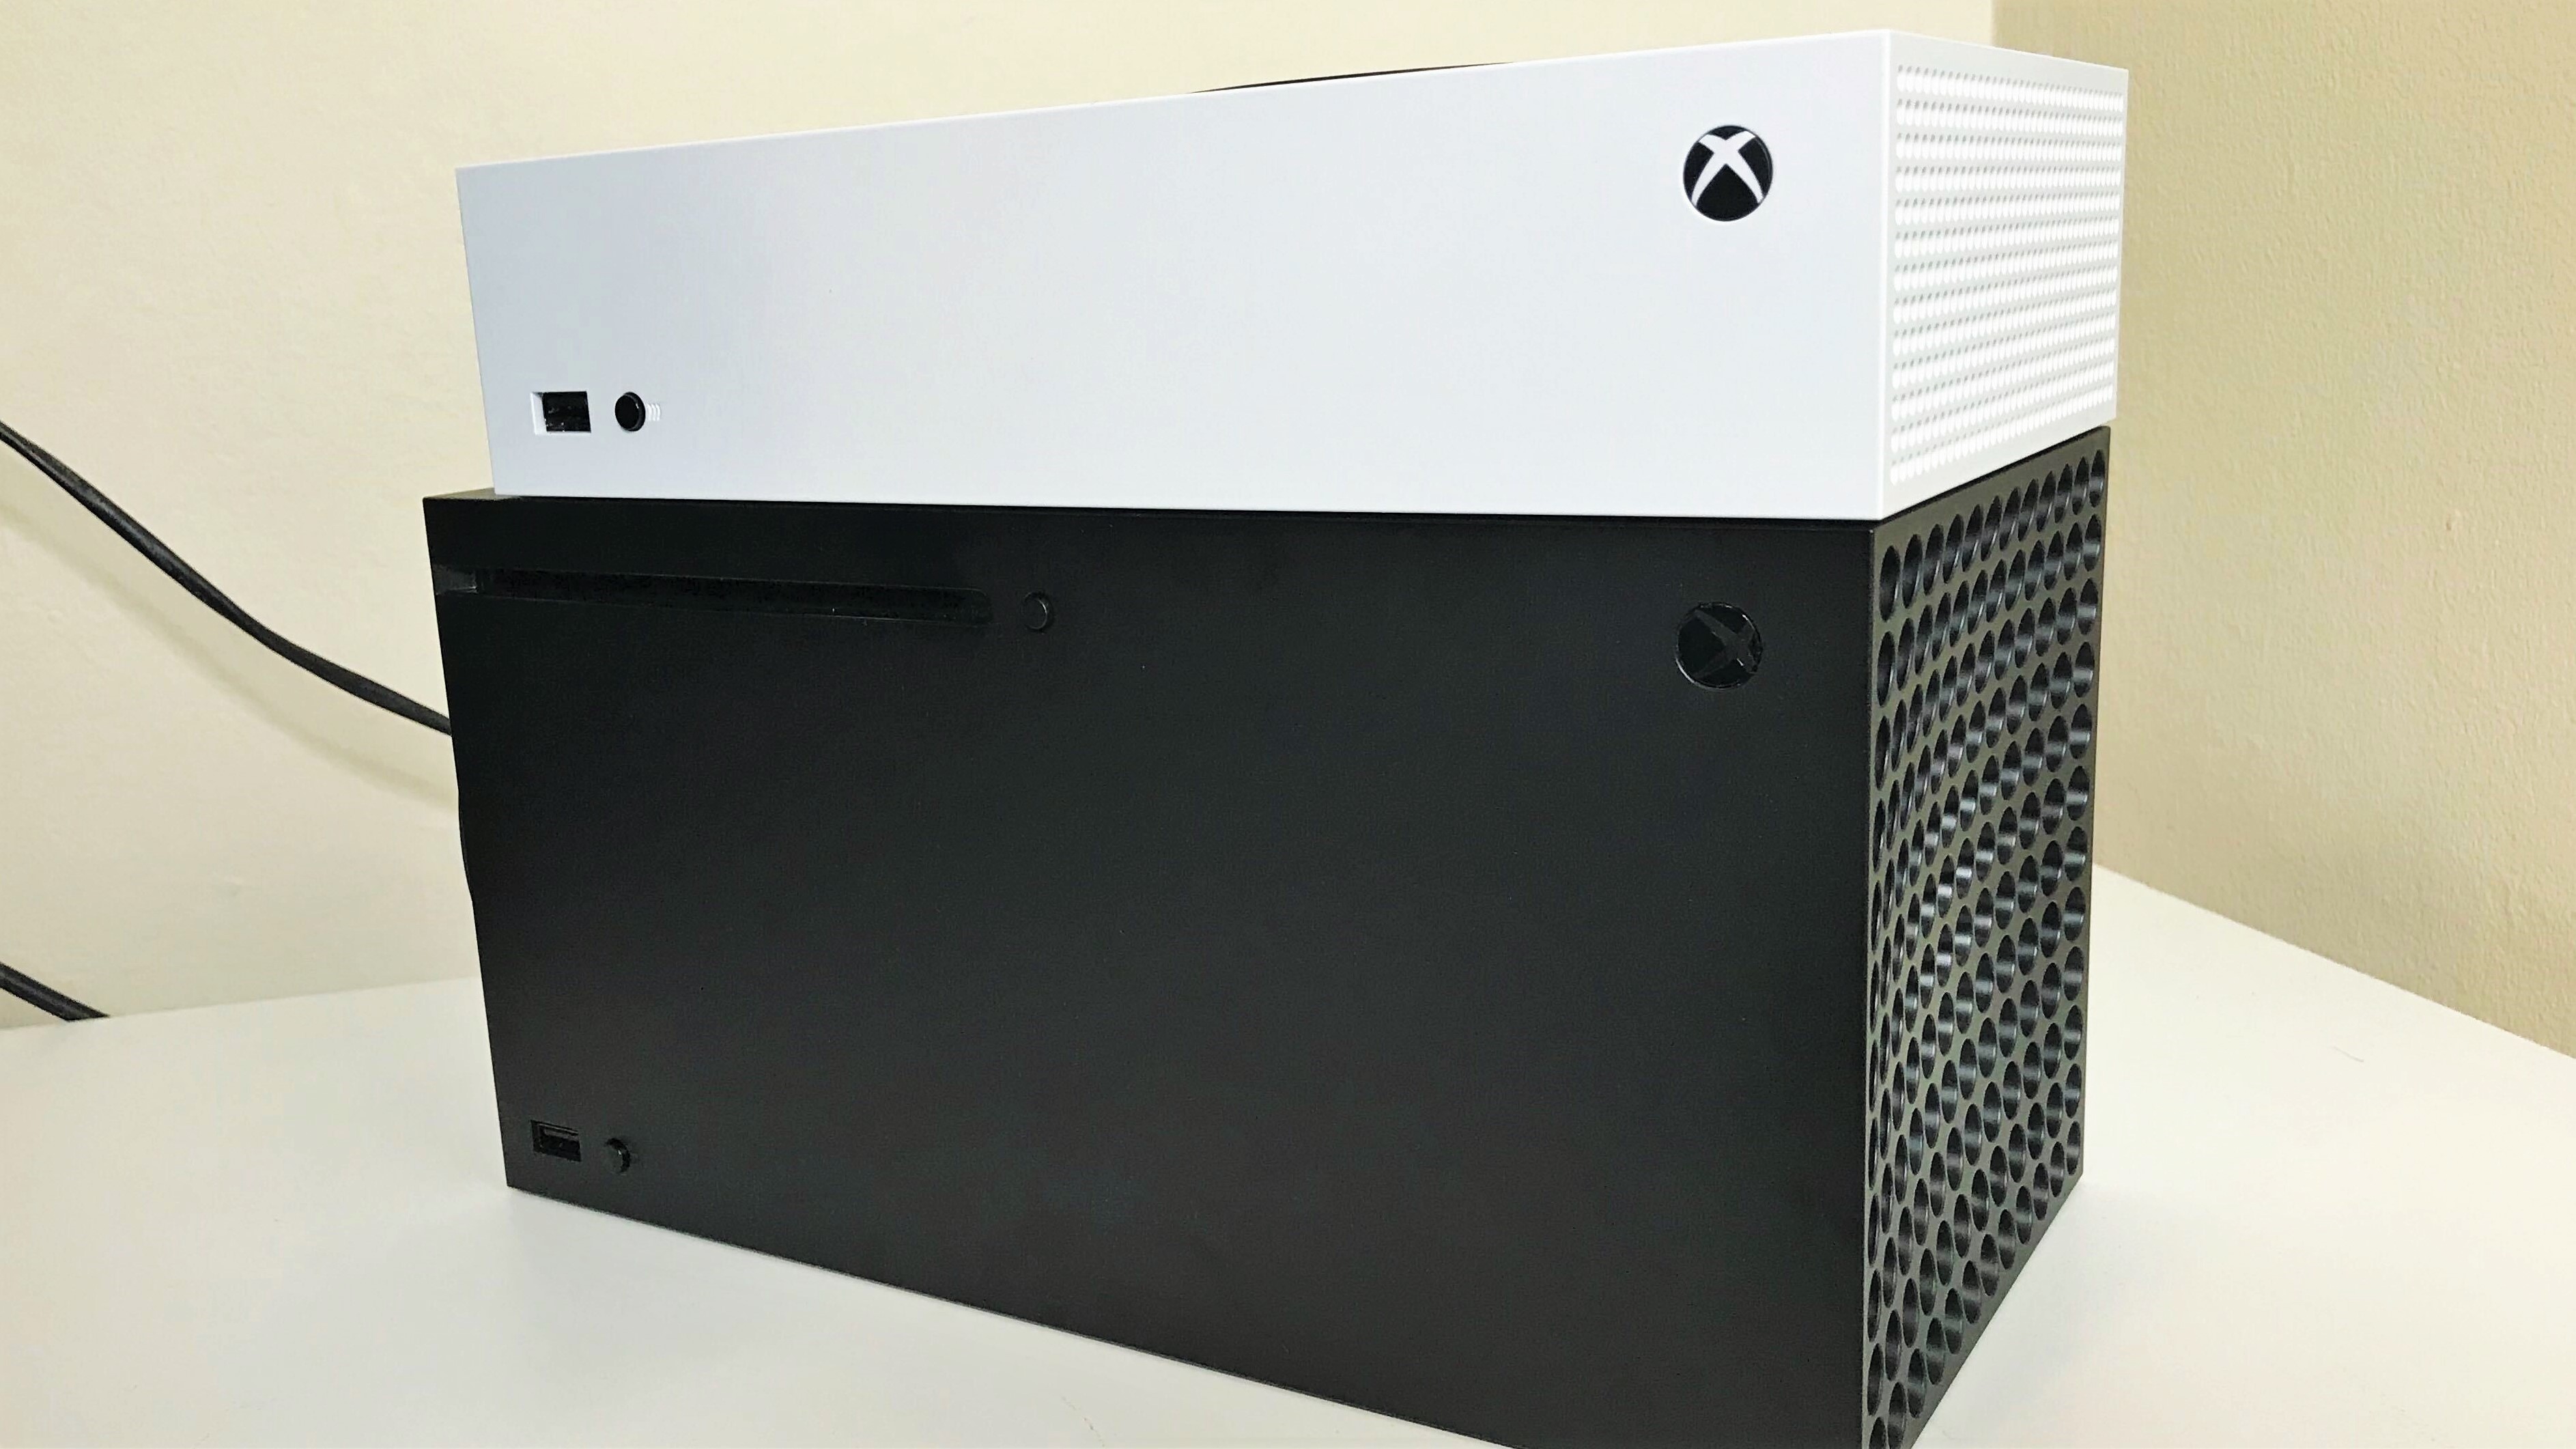 Heerlijk Vaderlijk oneerlijk We Have The Xbox Series X And Series S Mockup Consoles: A Closer Look And  Size Comparisons - GameSpot